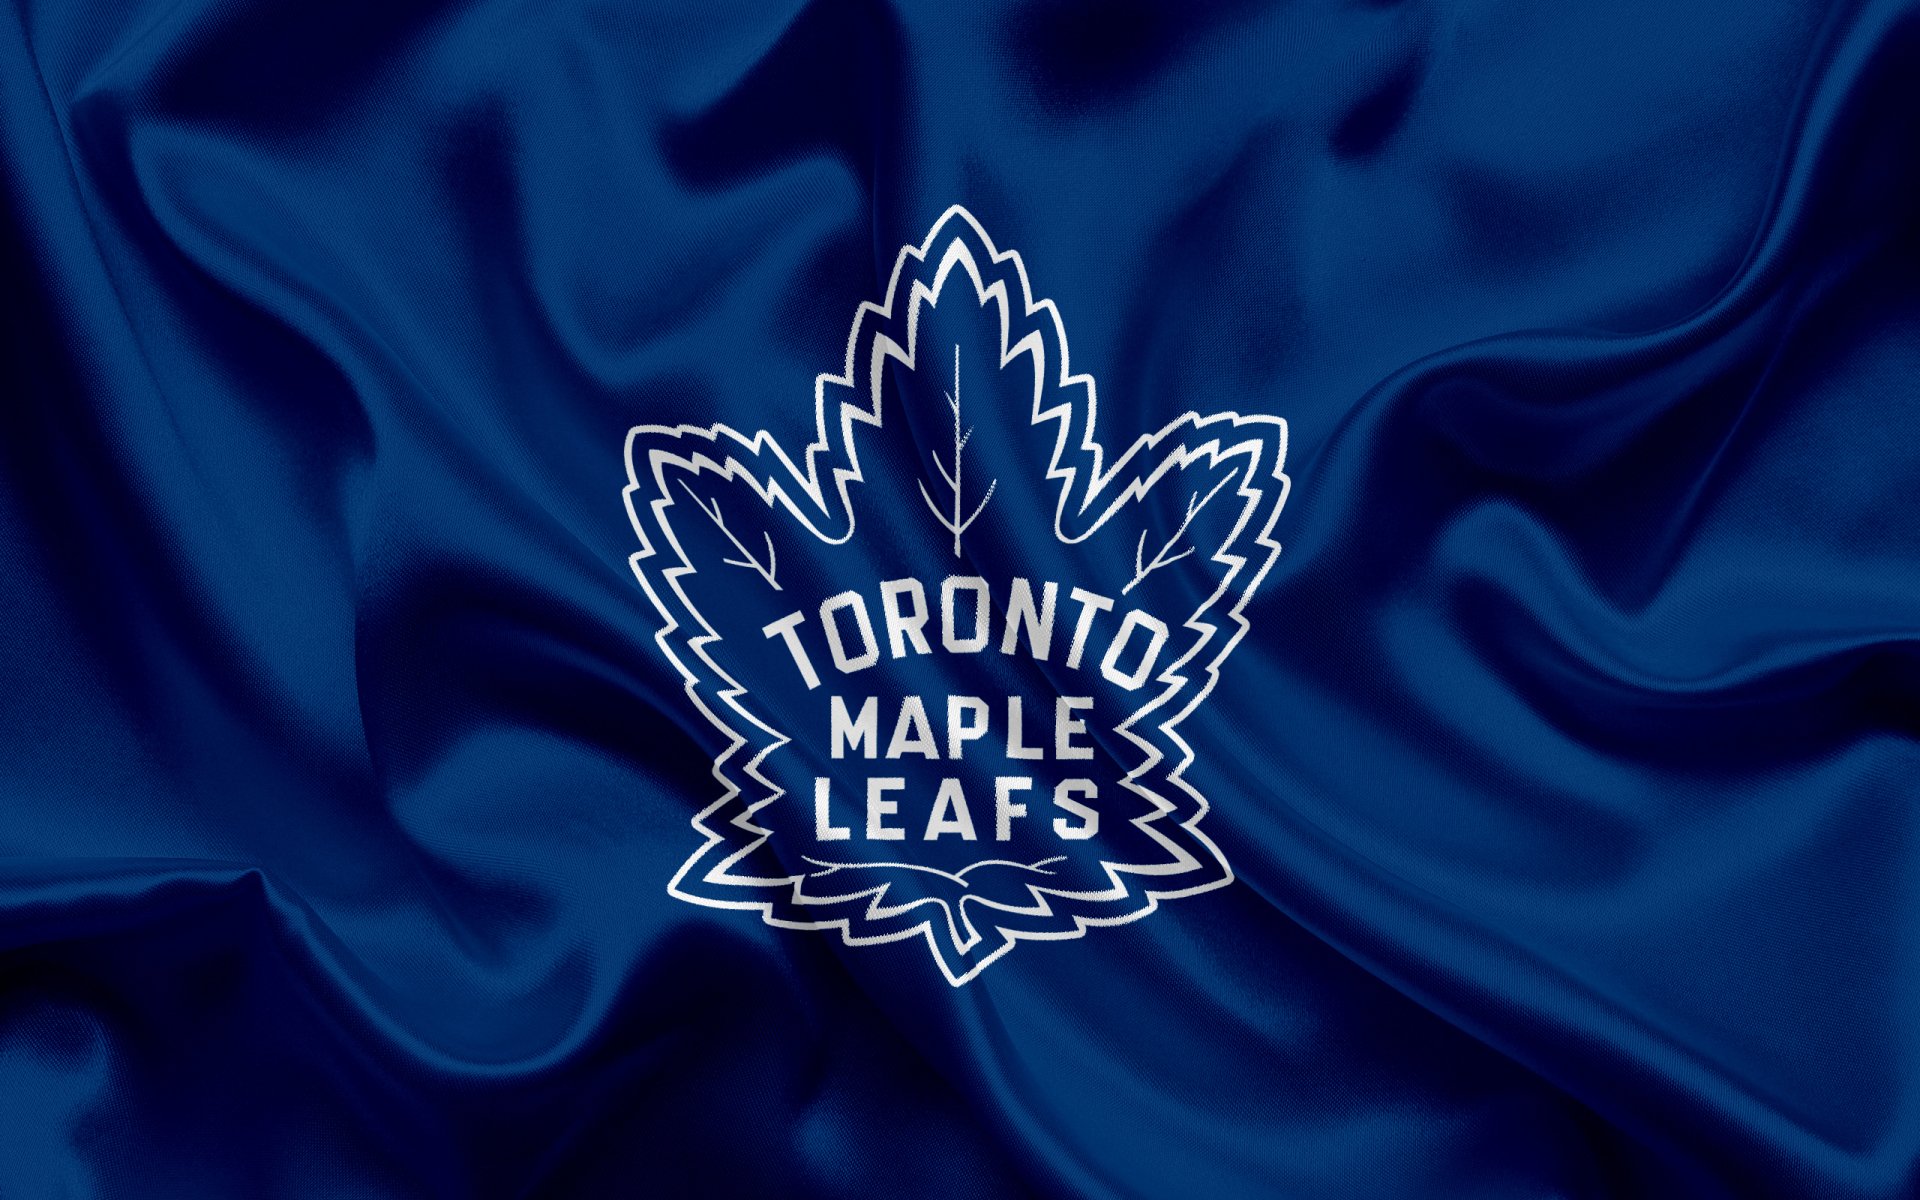 Toronto Maple Leafs wallpaper by ElnazTajaddod - Download on ZEDGE™